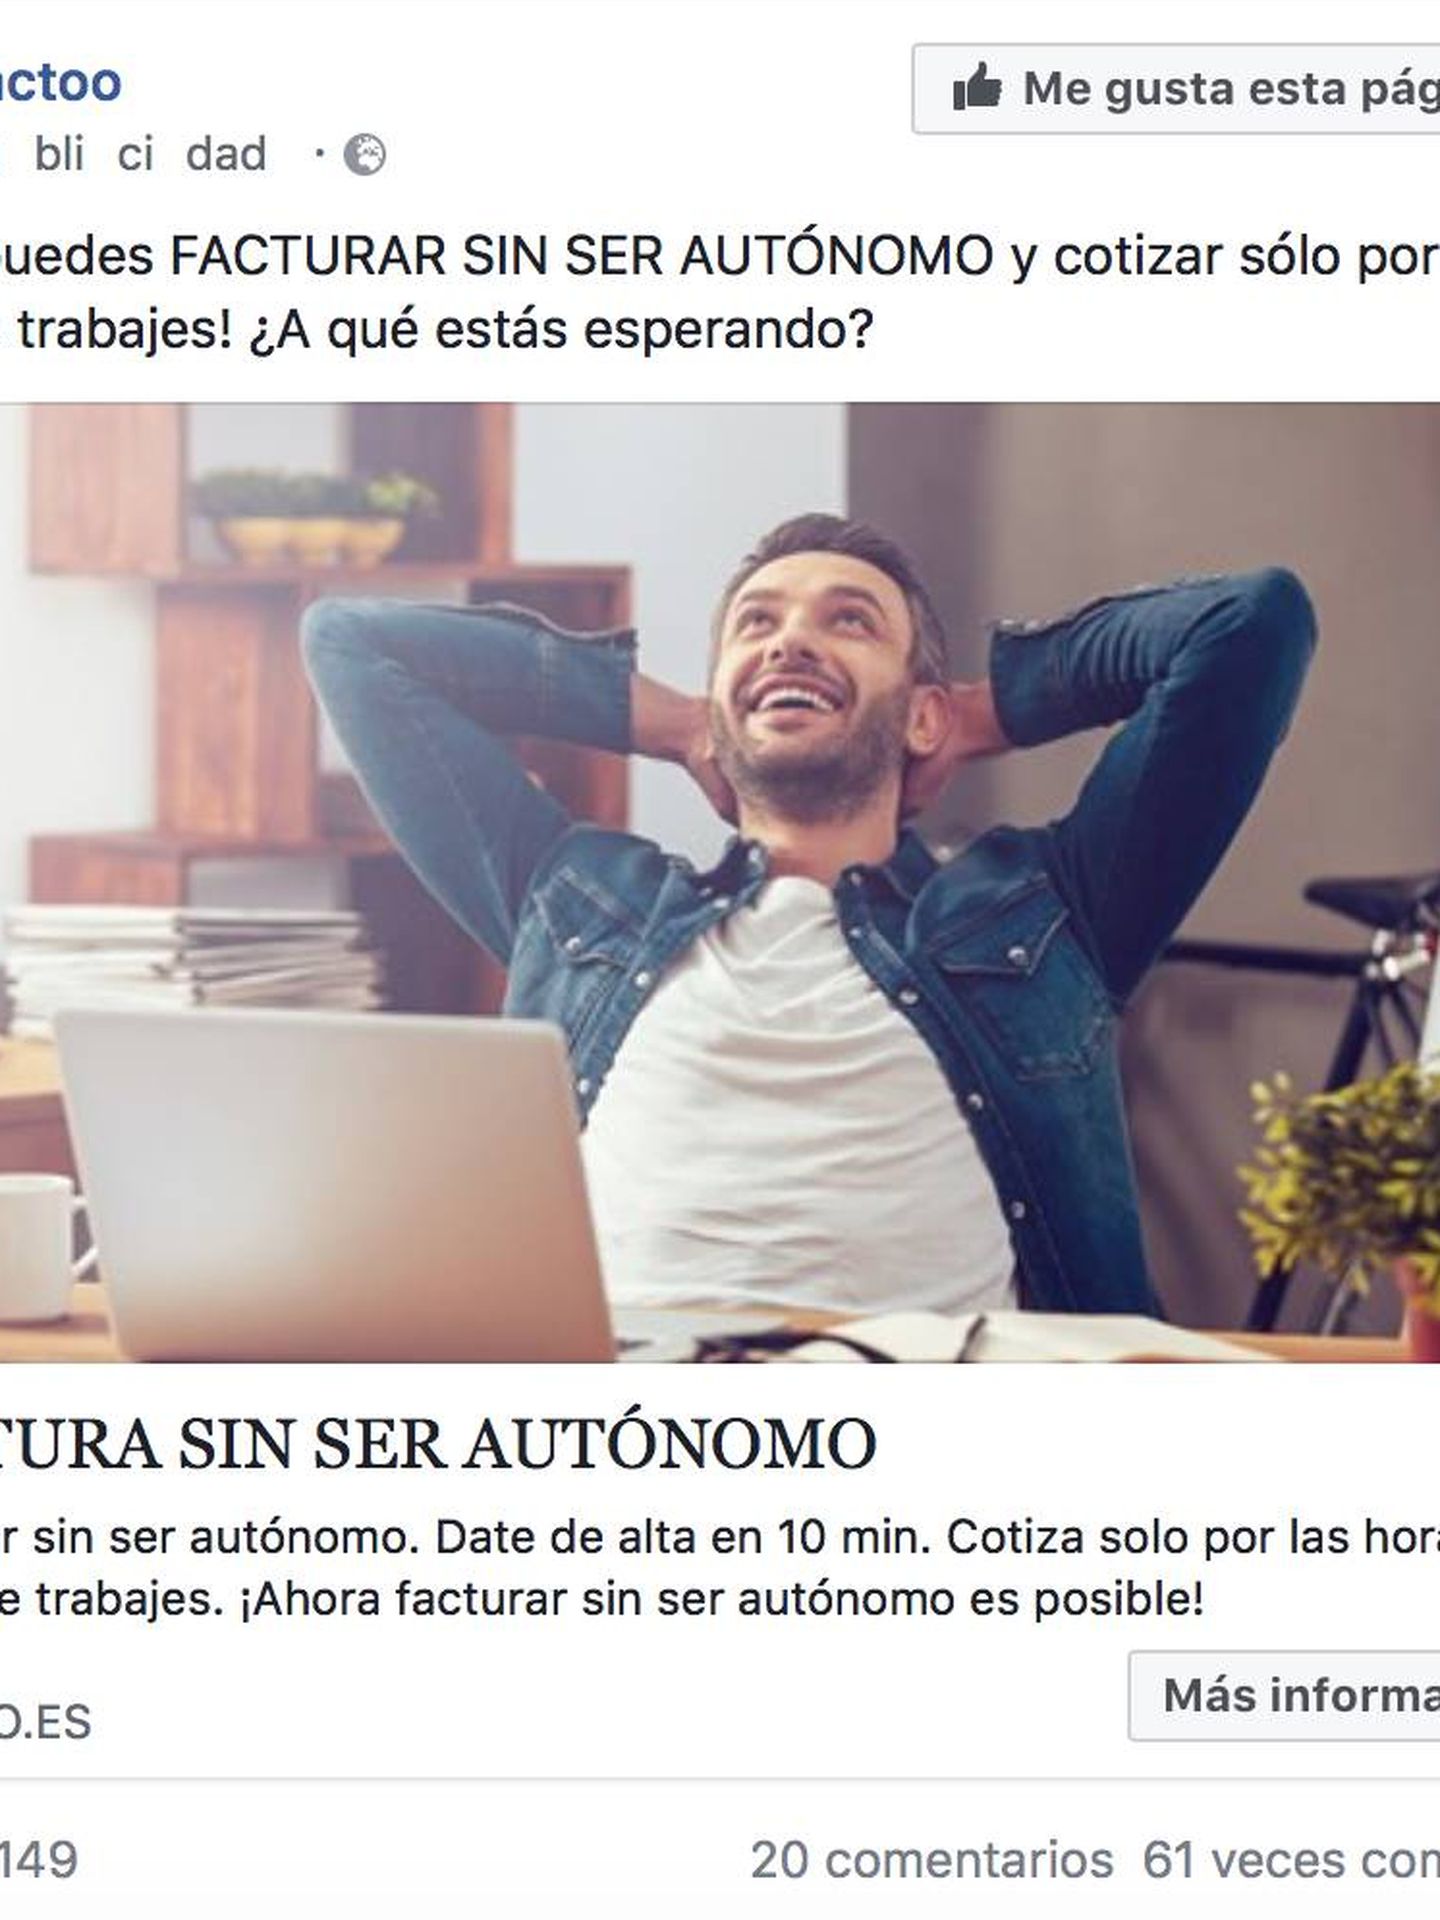 Uno de los anuncios en Facebook de Factoo ofreciéndose como reclamo para 'facturar sin ser autónomo'.